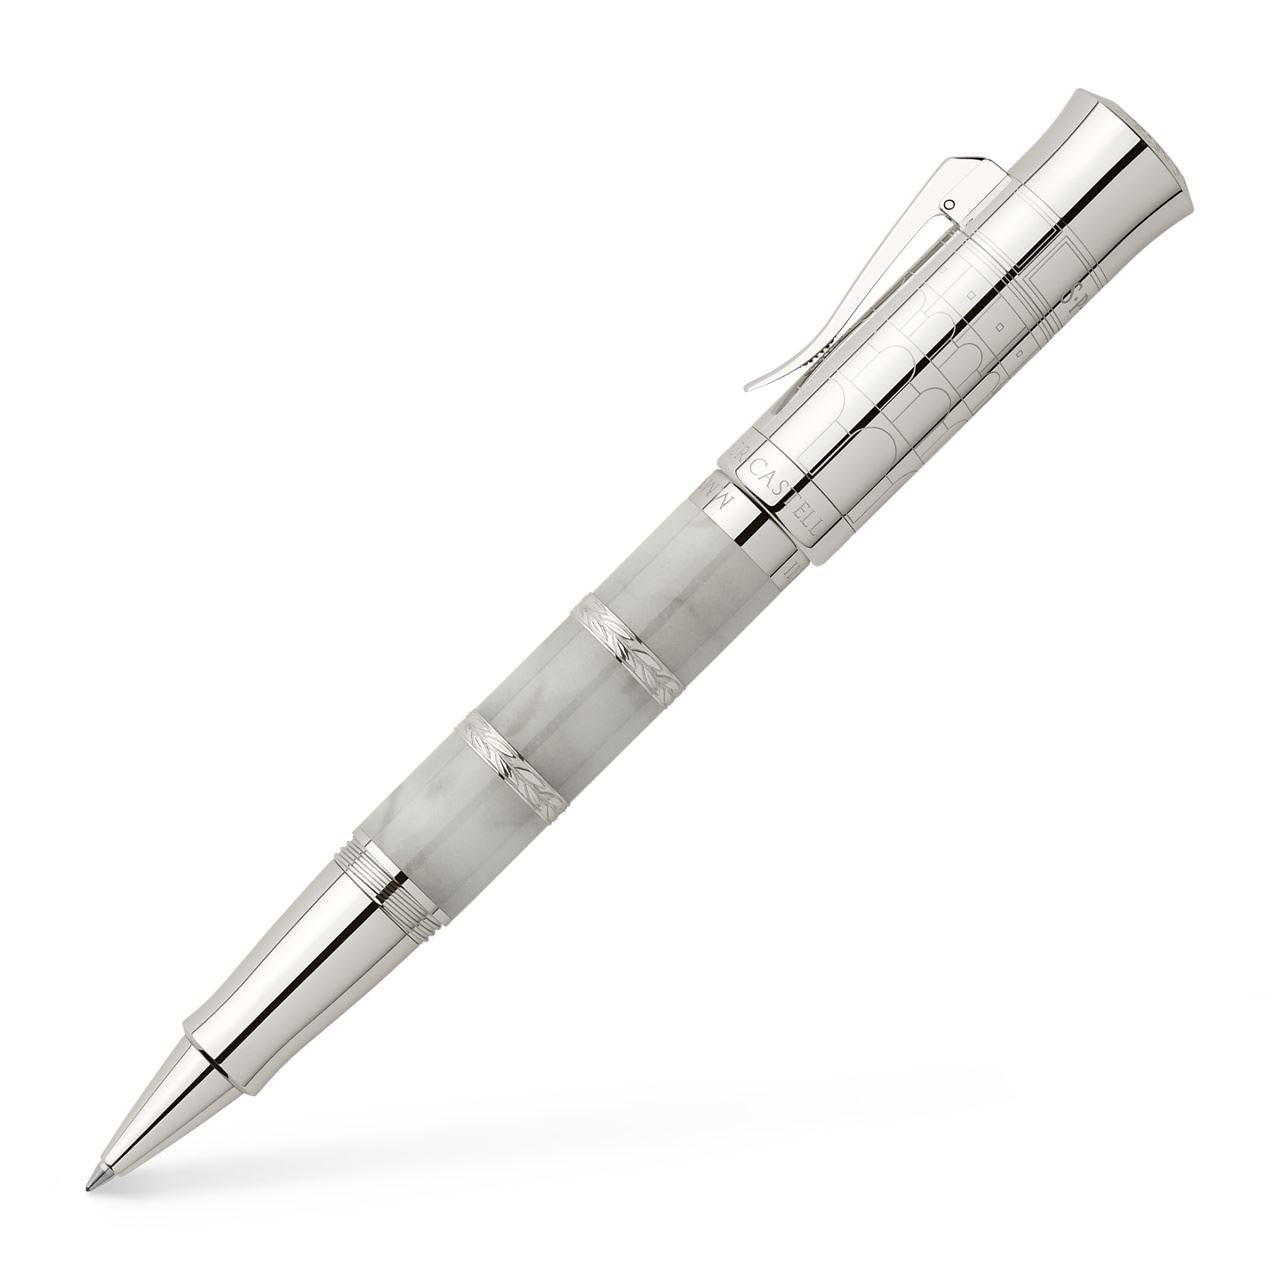 Graf-von-Faber-Castell - Tintenroller Pen of the Year 2018 platiniert